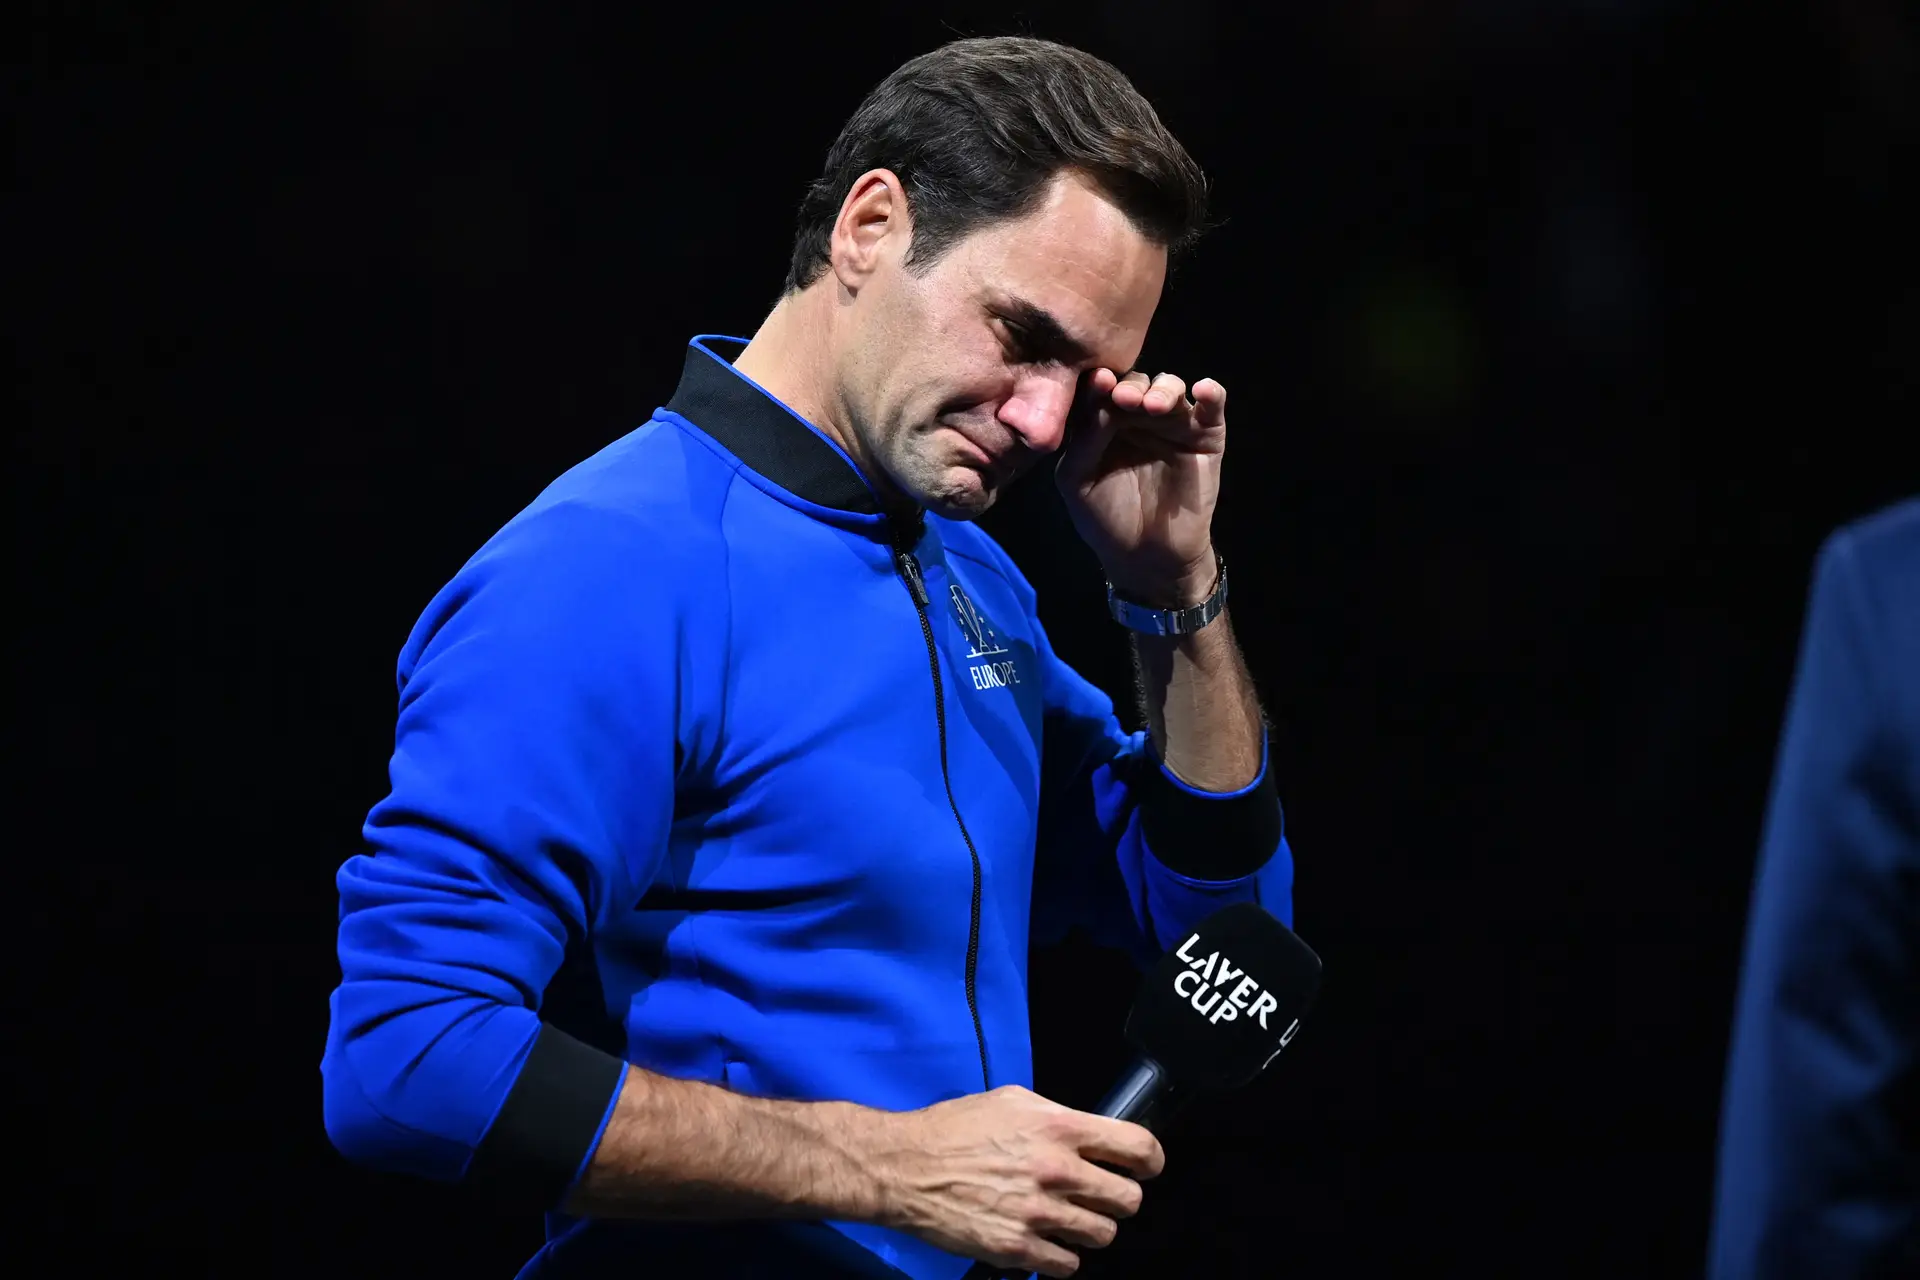 Despedida de Federer acontece em jogo de duplas com Nadal na Laver Cup;  veja onde assistir - Folha PE